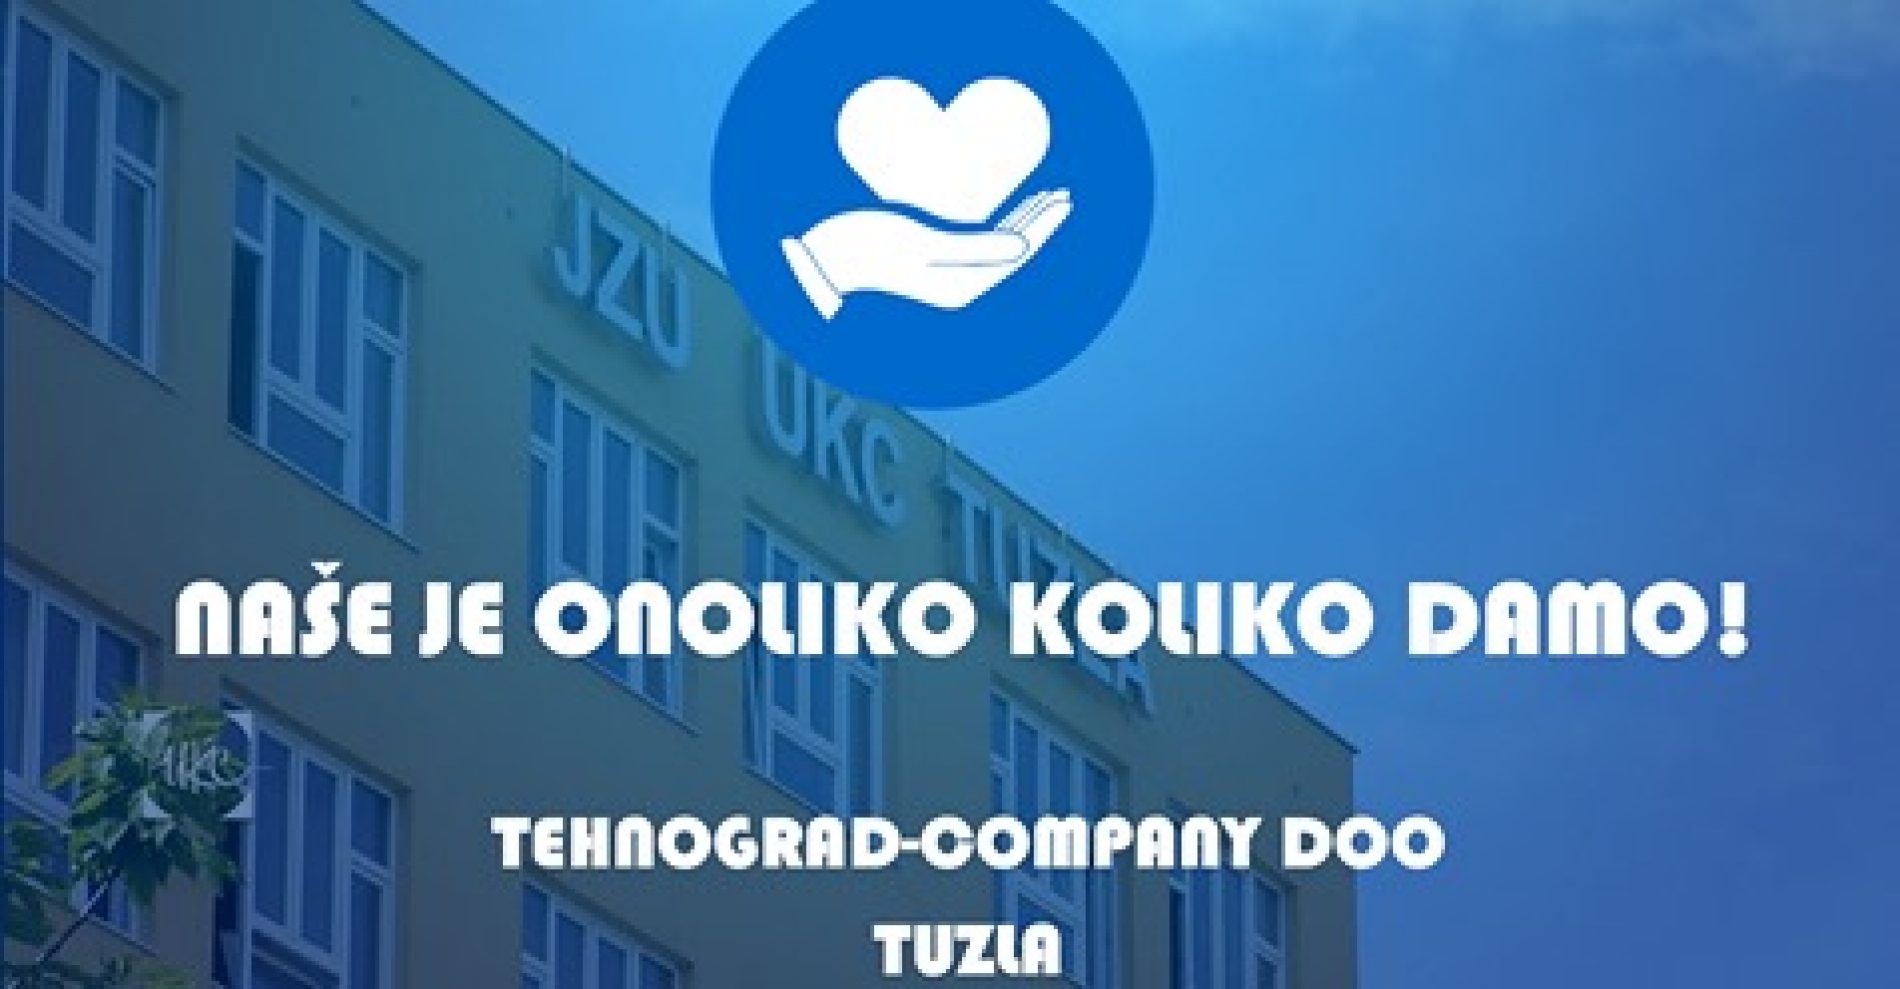 Kompanija ‘Tehnograd’ donira 1000 zaštitnih odijela UKC-u Tuzla